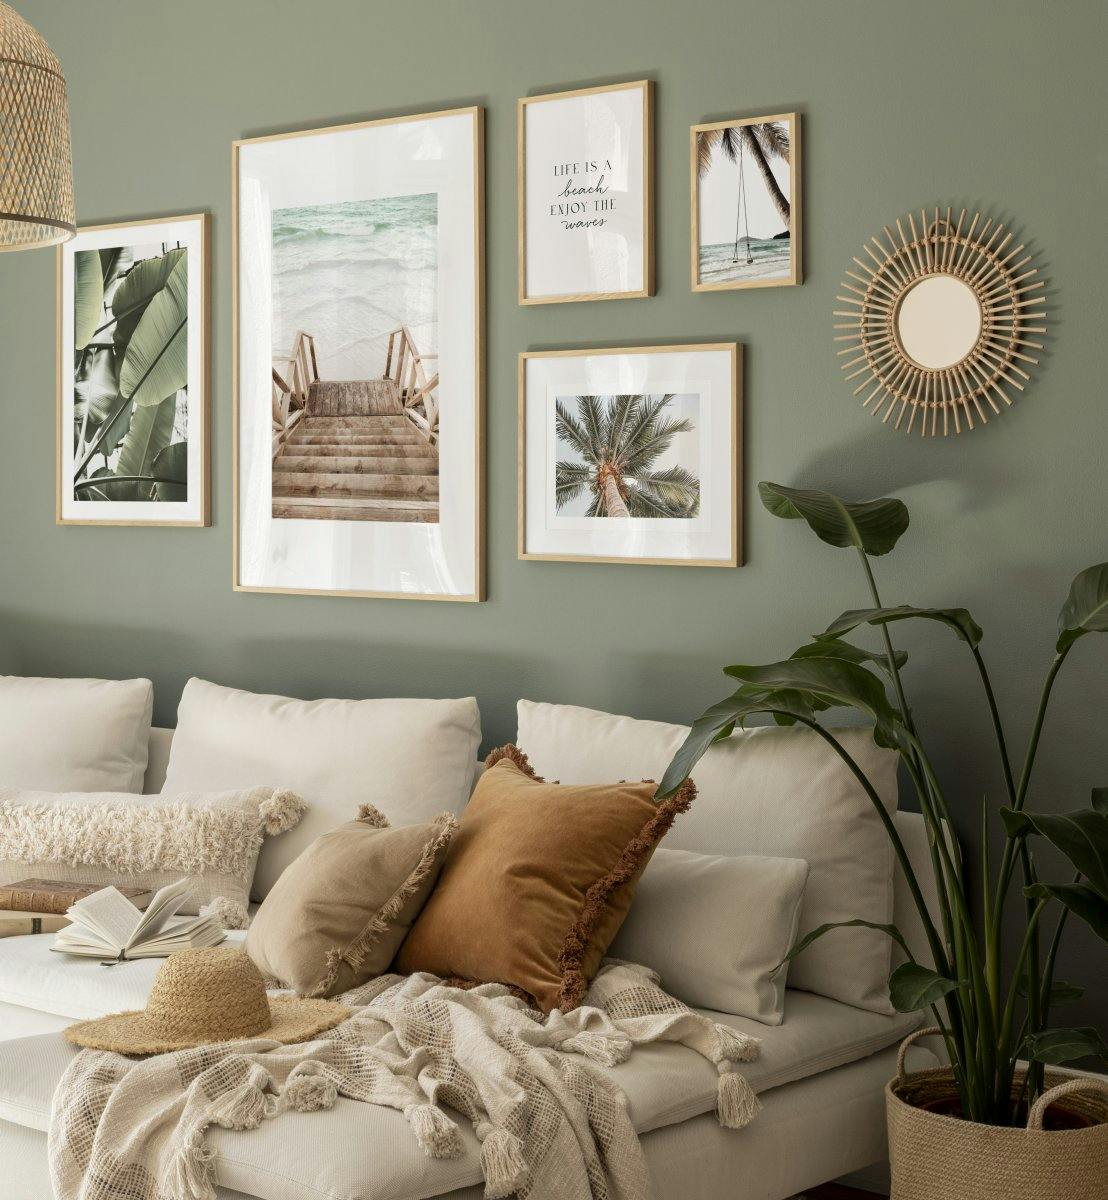 Grøn og beige bohemic billedvæg med naturbilleder og fotokunst til soveværelset